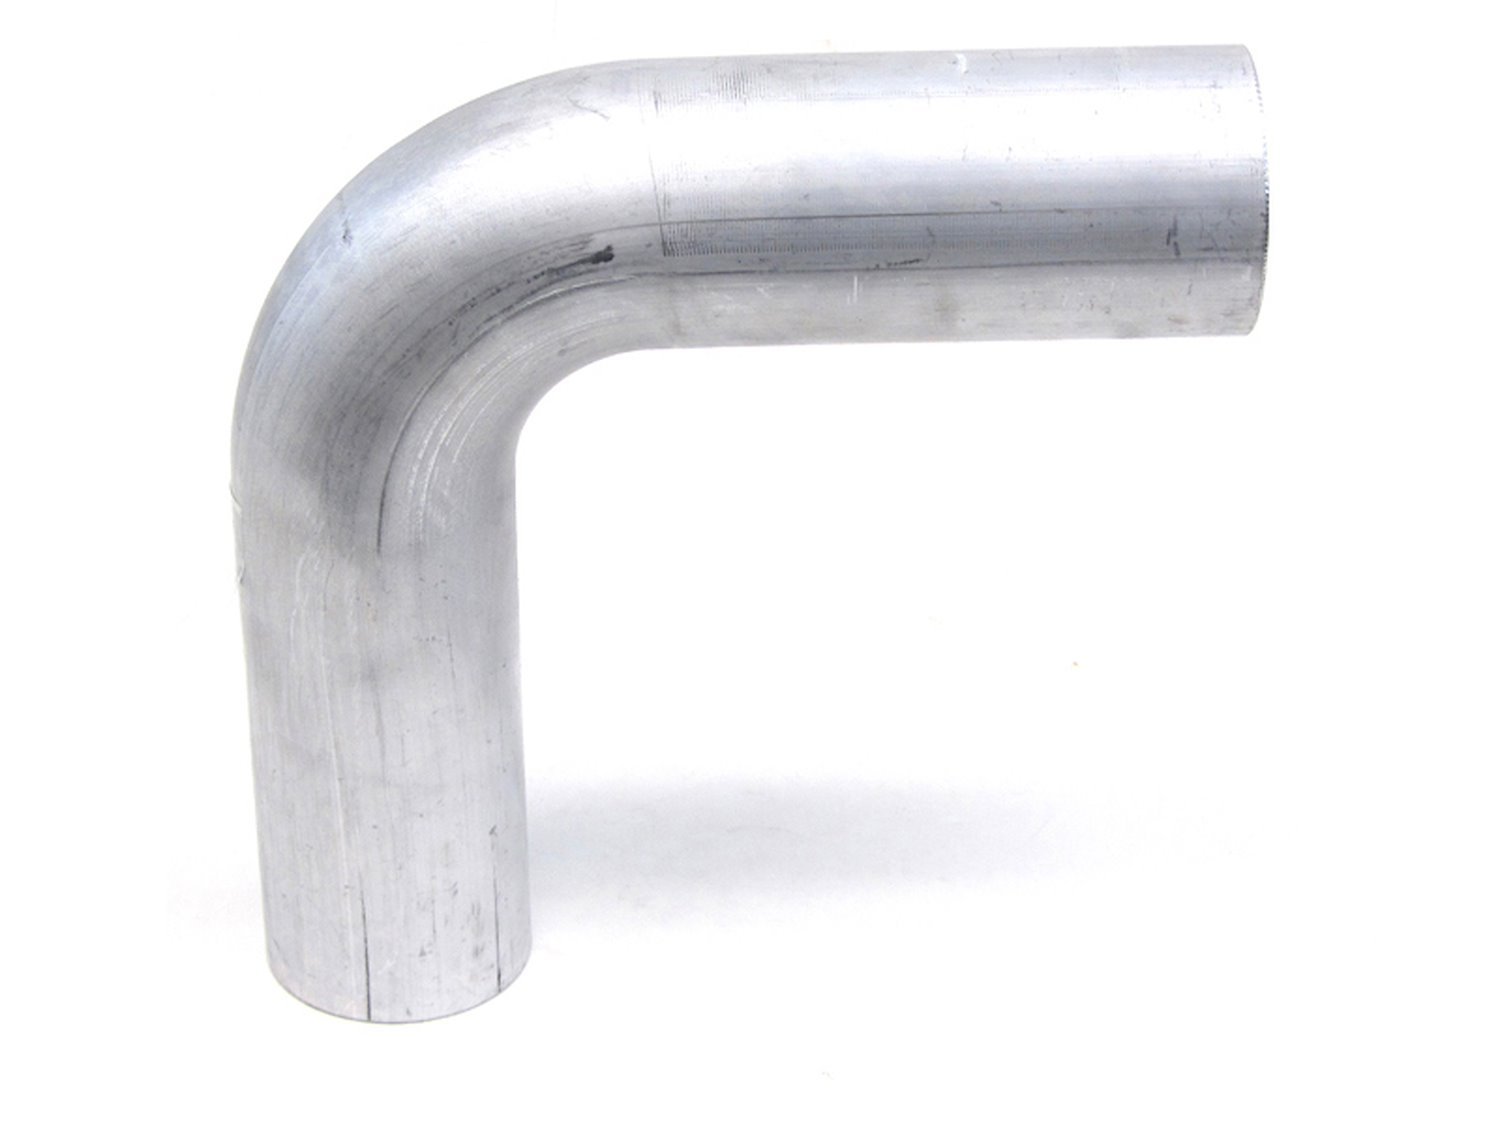 AT90-187-CLR-225 Aluminum Elbow Tube, 6061 Aluminum, 90-Degree Bend Elbow Tubing, 1-7/8 in. OD, Tight Radius, 2-1/4 in. CLR